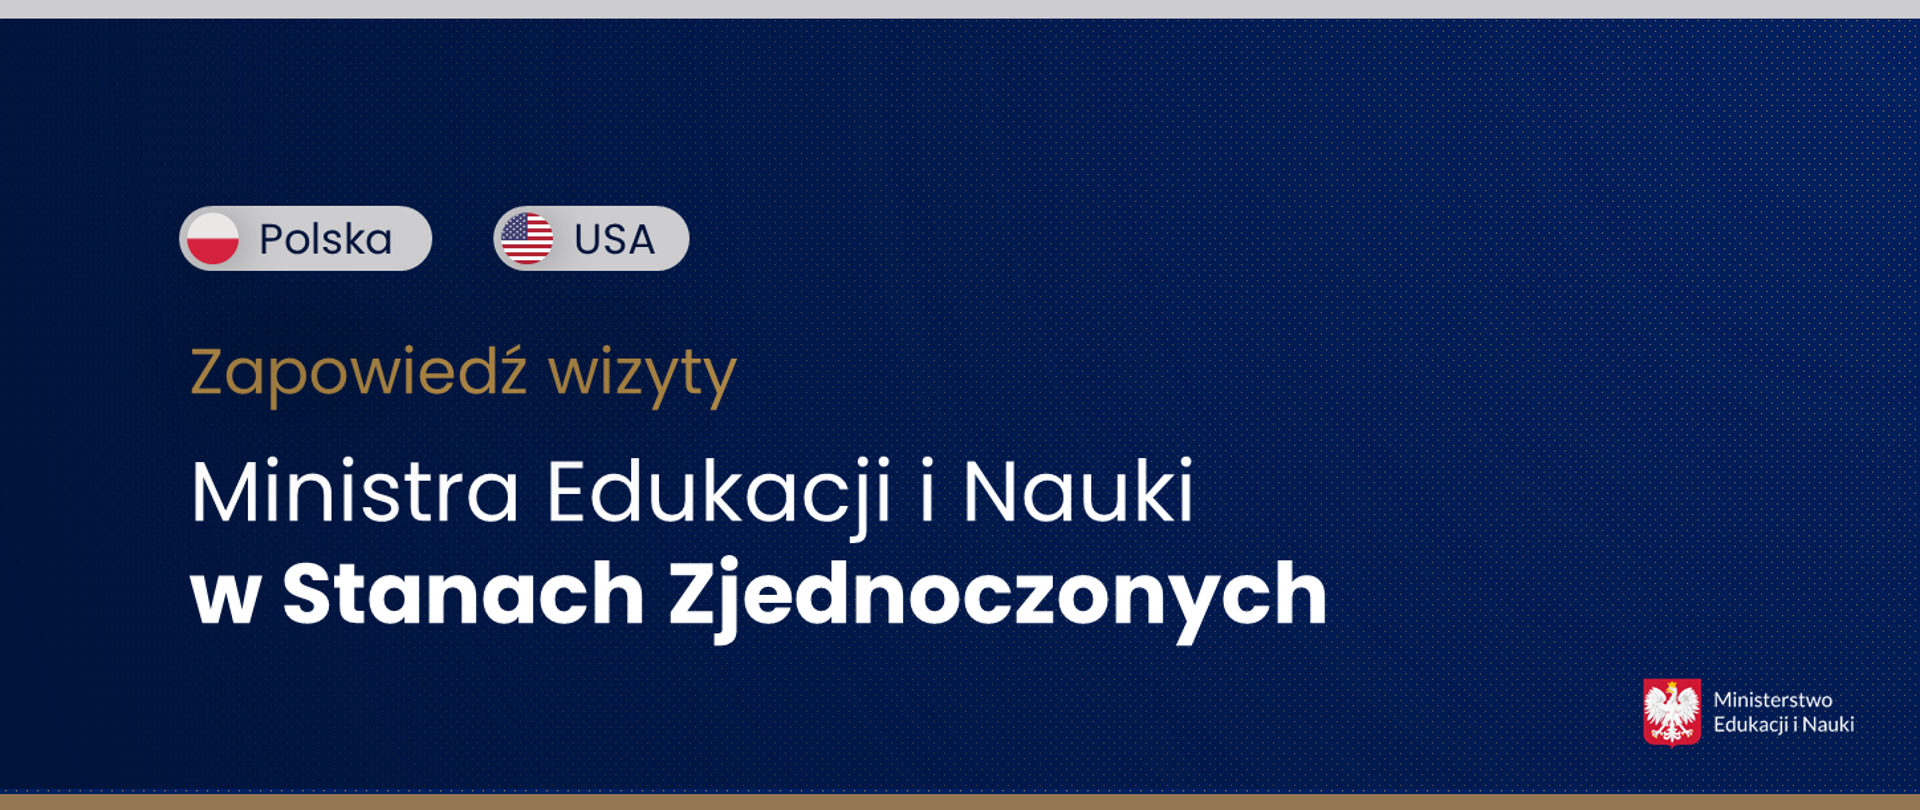 Grafika - na niebieskim tle napis Zapowiedź wizyty Ministra Edukacji i Nauki w Stanach Zjednoczonych i dwie flagi - polska i amerykańska.